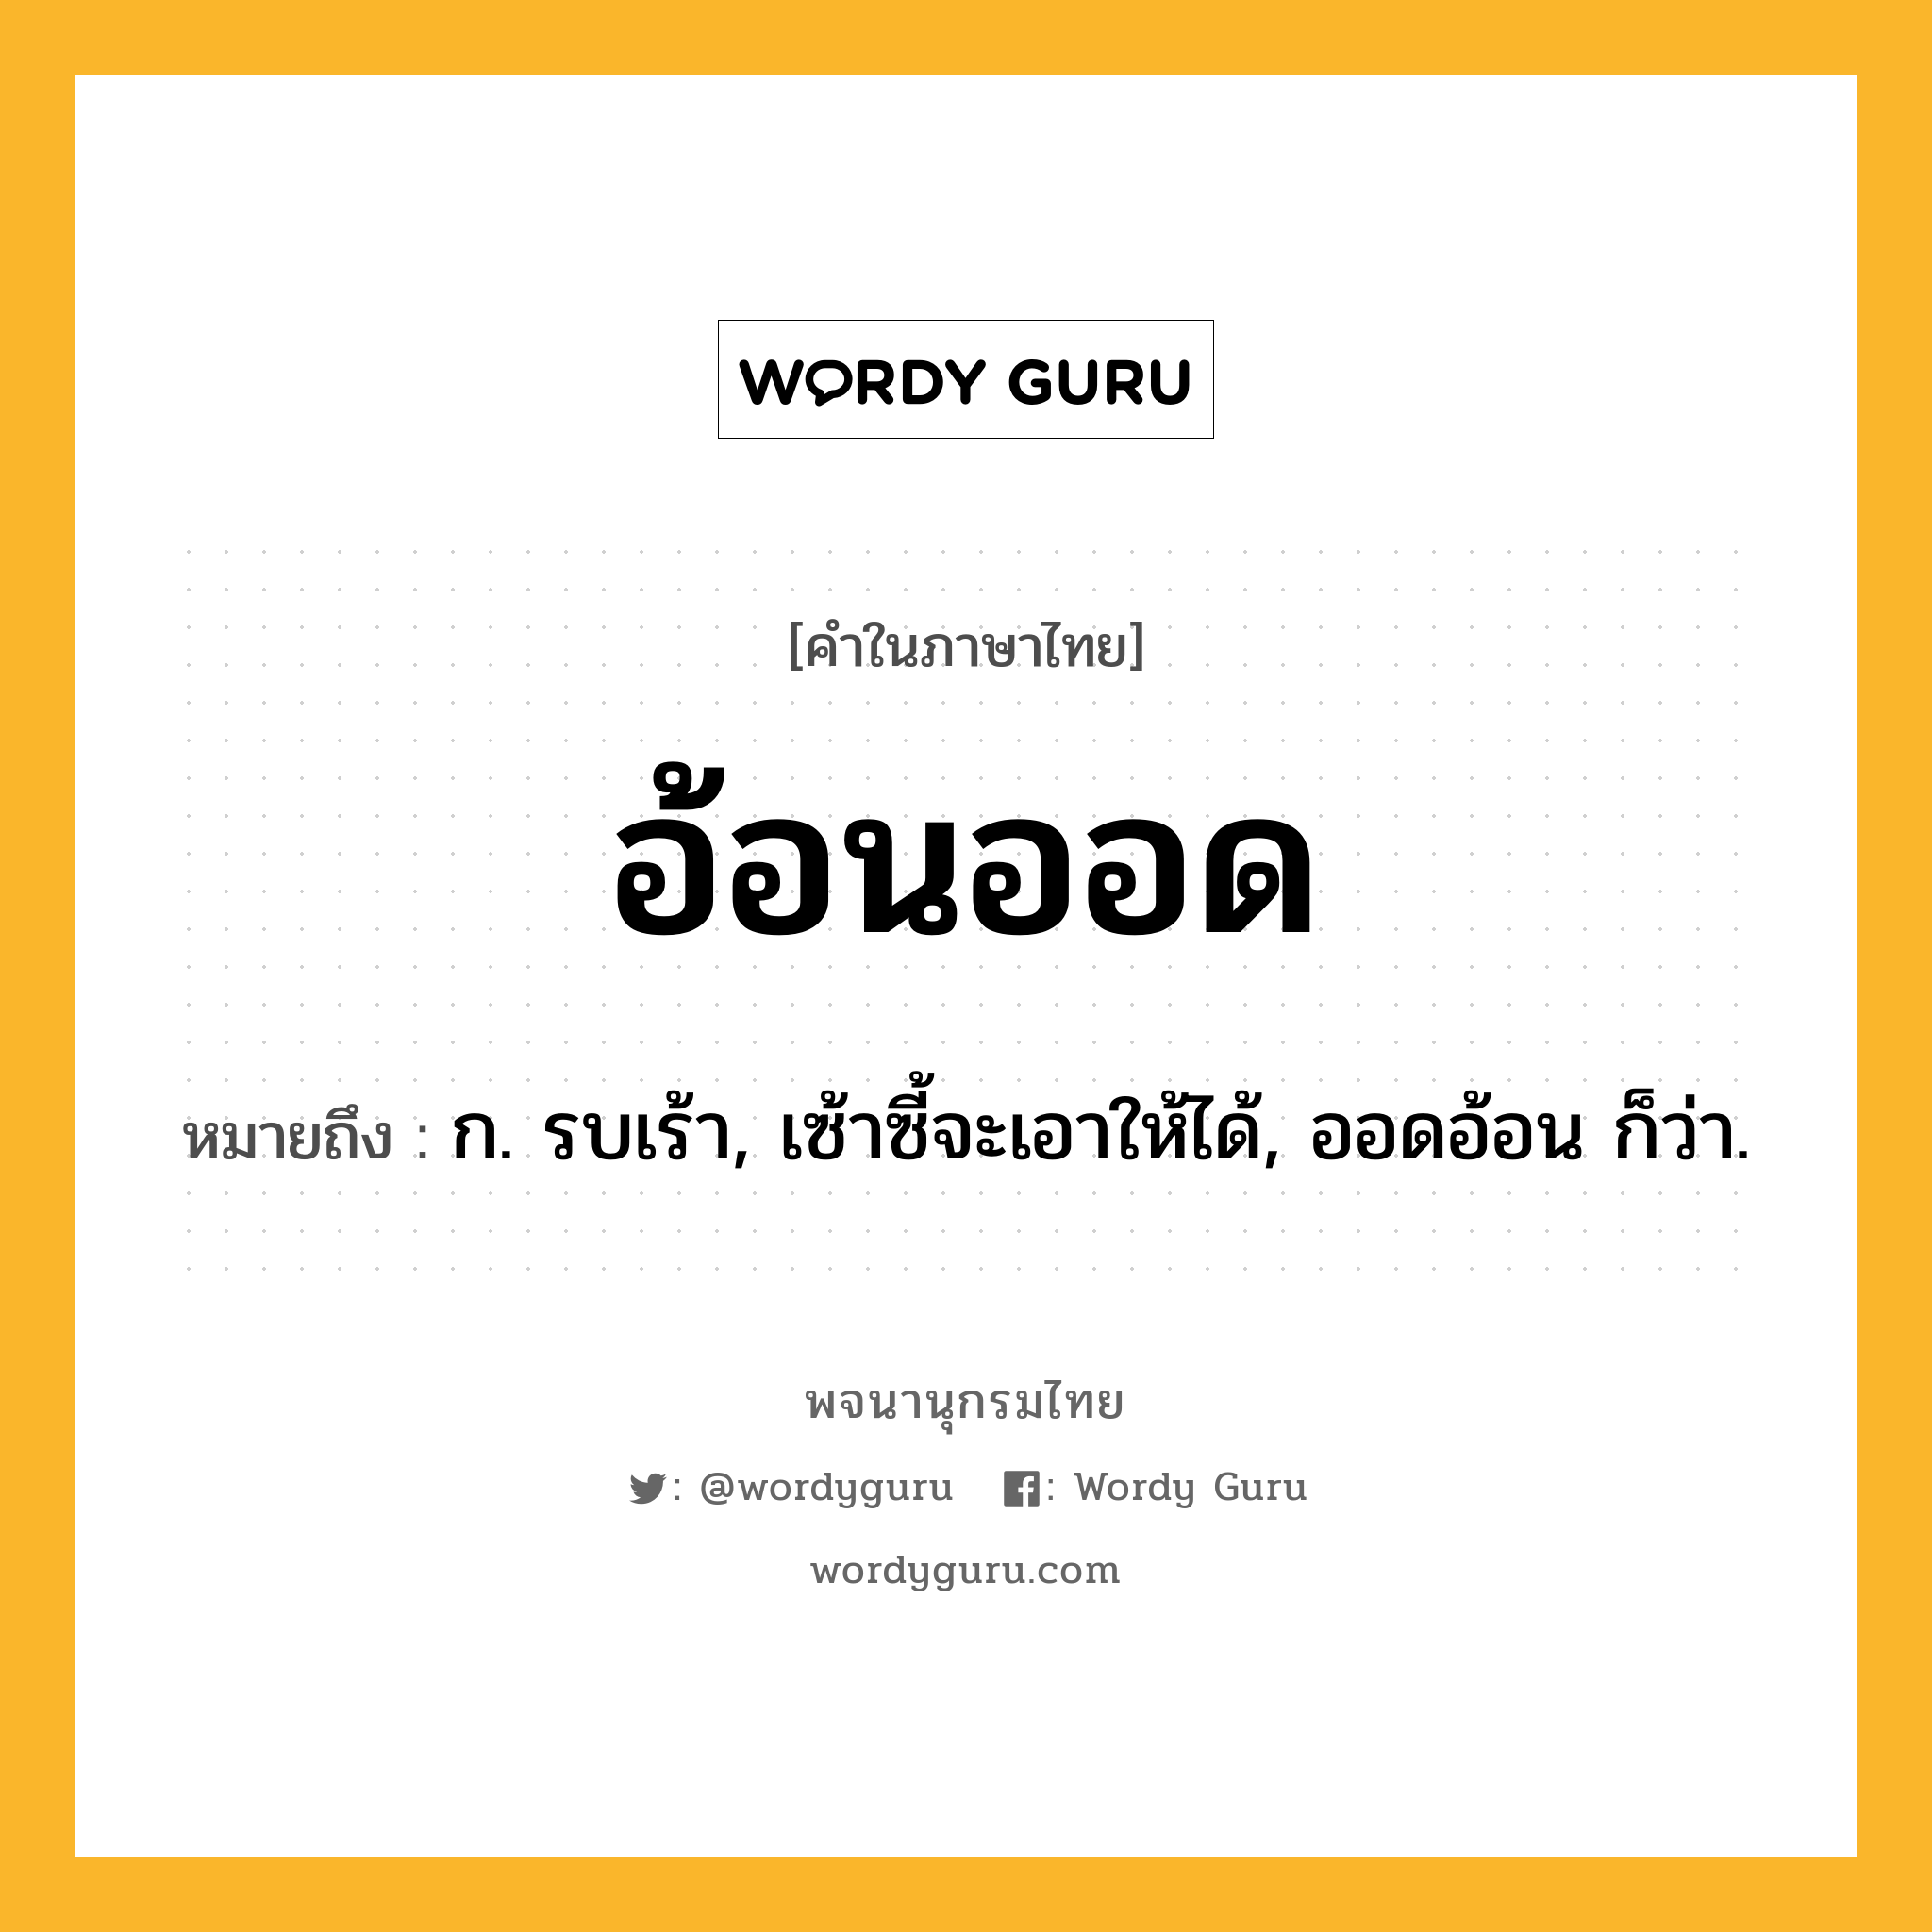 อ้อนออด หมายถึงอะไร?, คำในภาษาไทย อ้อนออด หมายถึง ก. รบเร้า, เซ้าซี้จะเอาให้ได้, ออดอ้อน ก็ว่า.